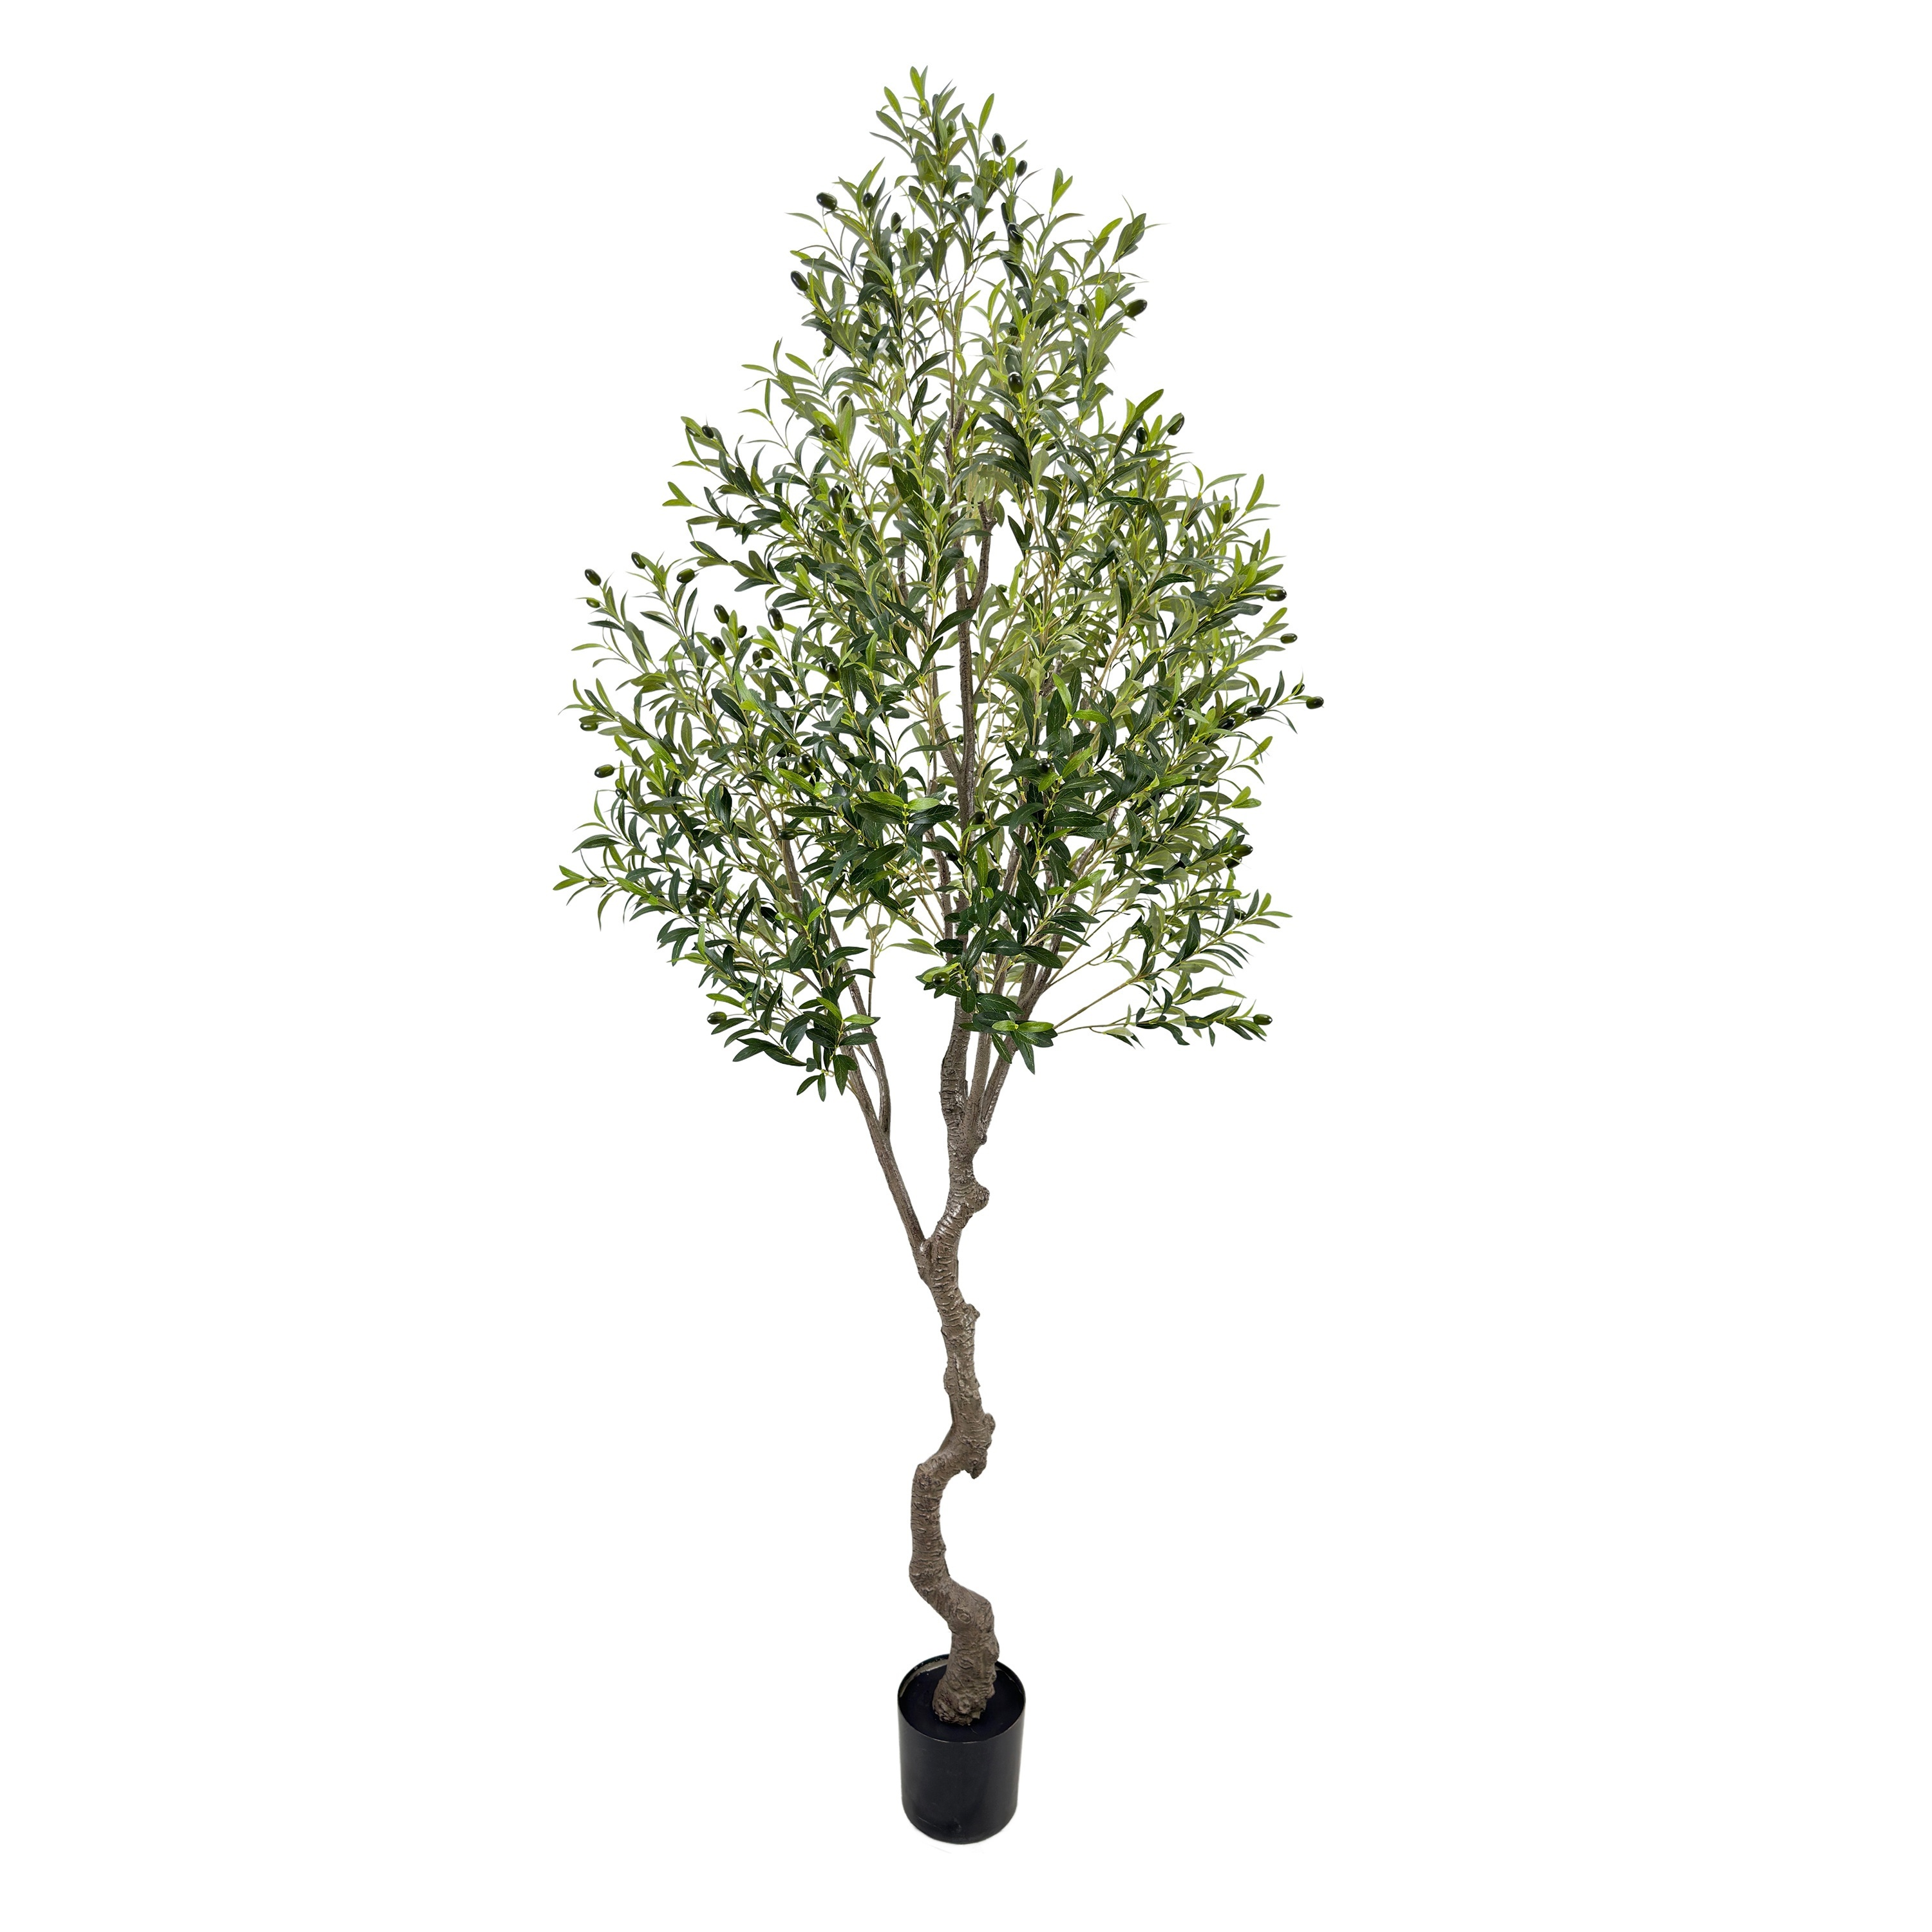 Olivo artificial realista tamaño mini, árbol decorativo calidad y